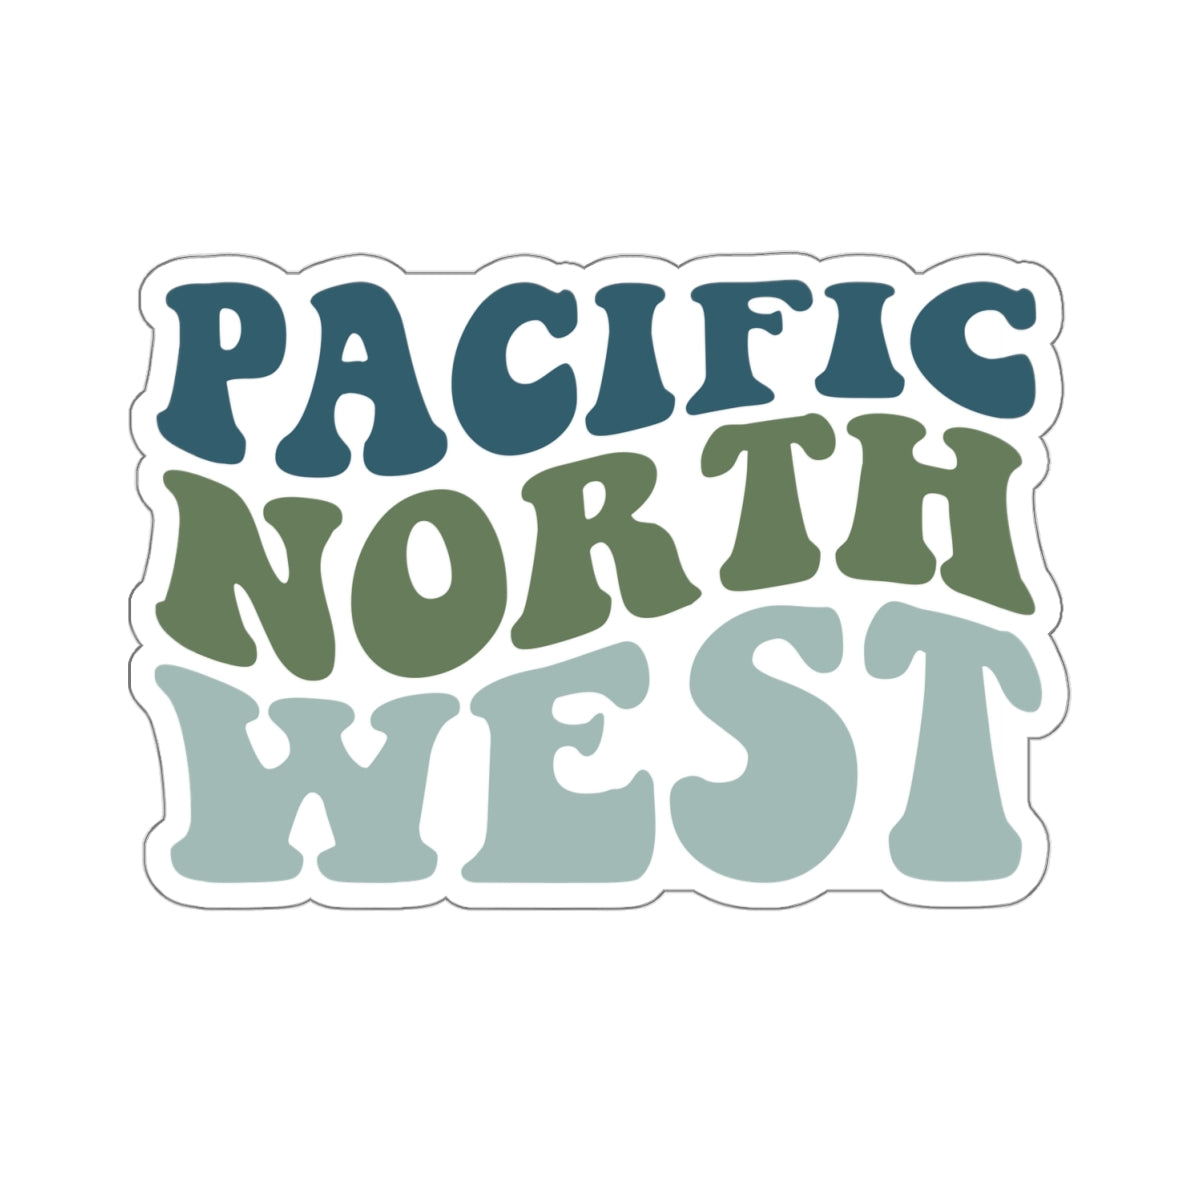 Pacific North West Sticker